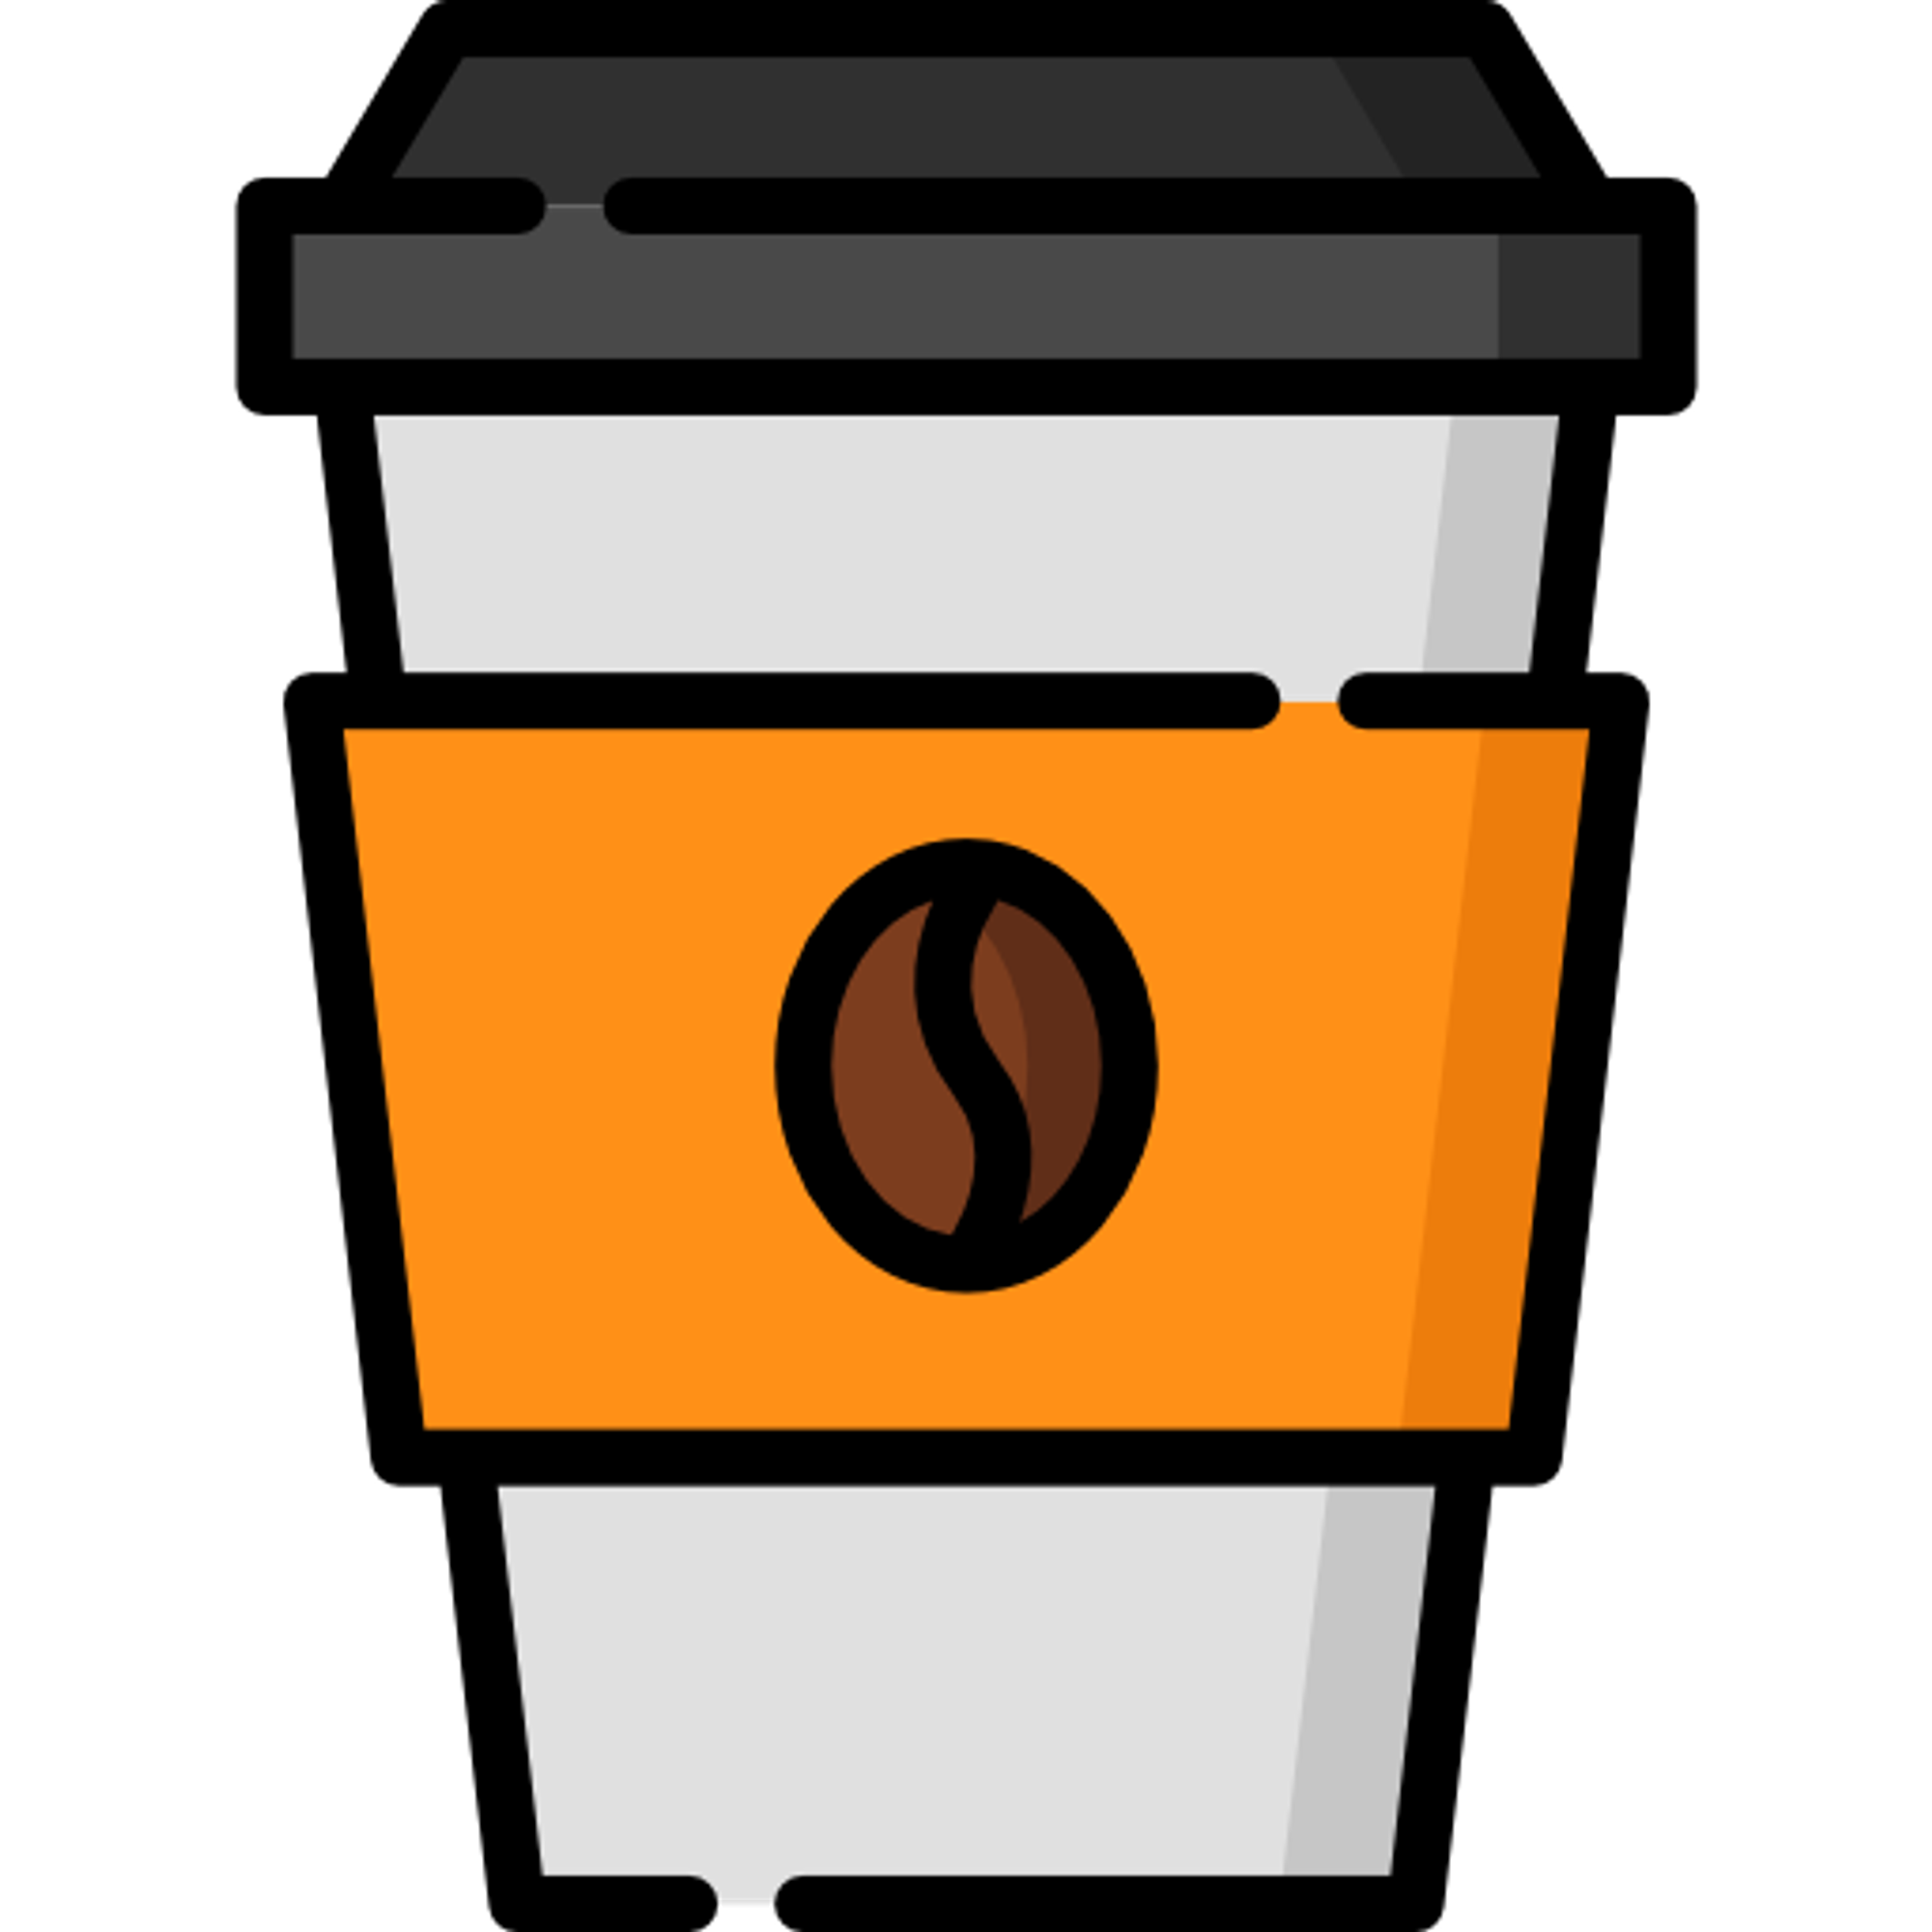 N’hésite à me prendre un café juste ici 💙. La légende raconte que le café se change en bons articles 😉.